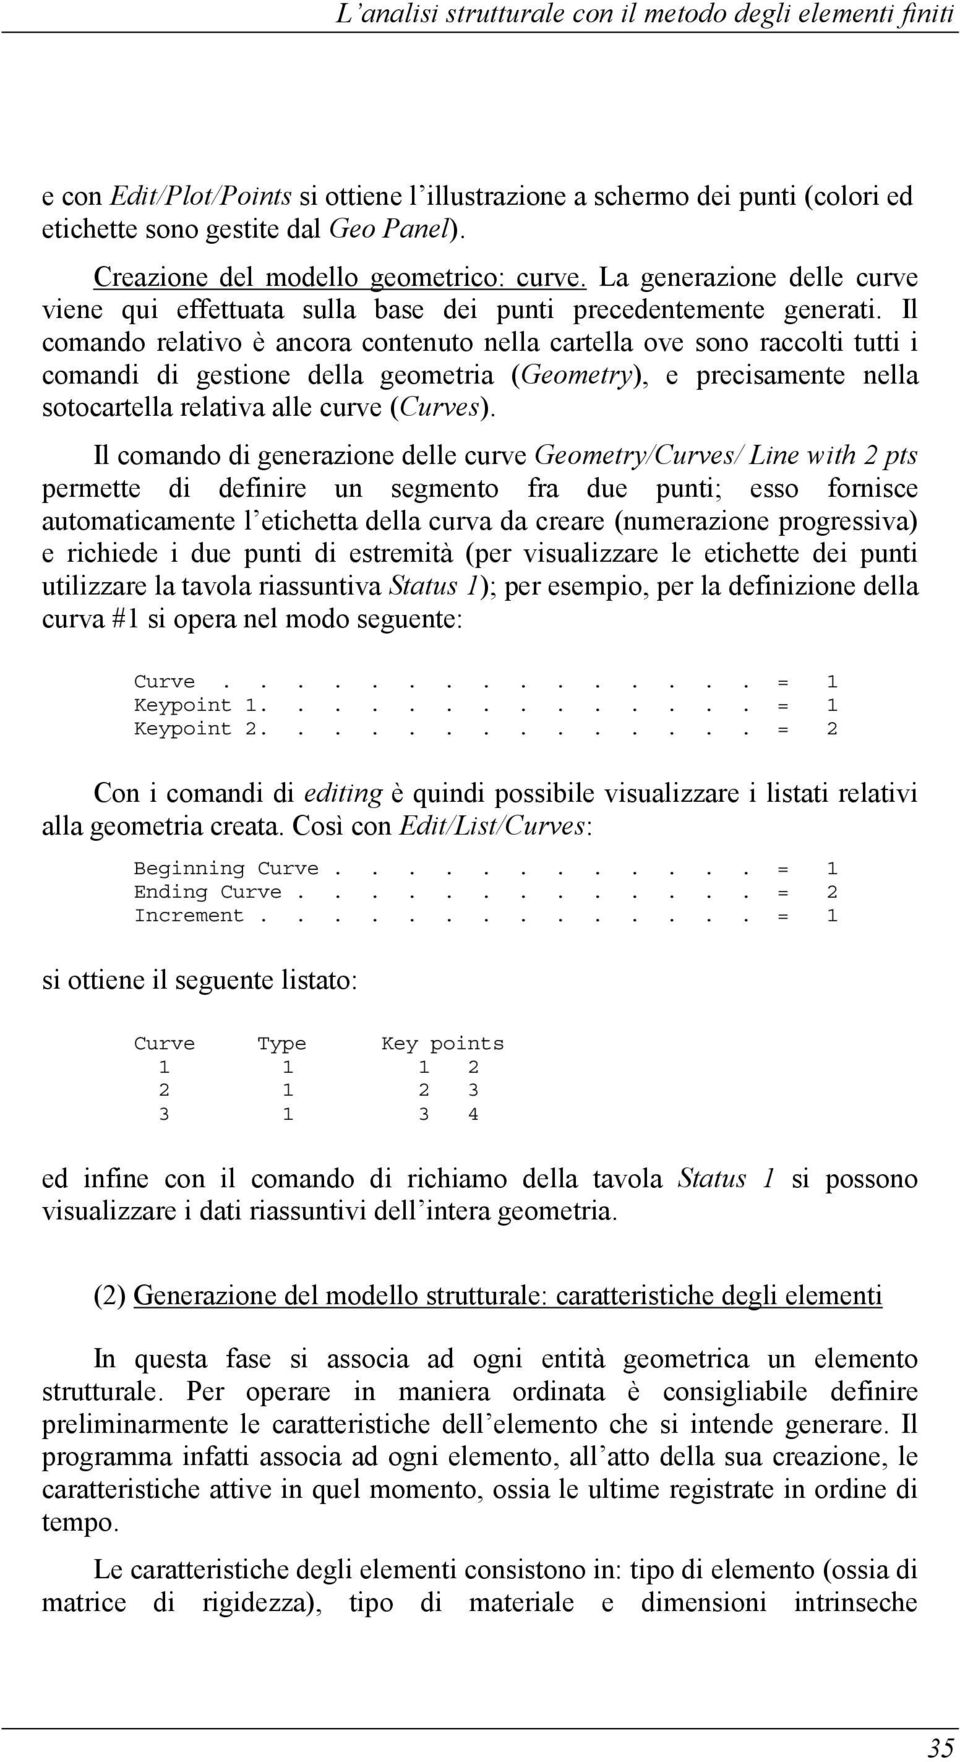 Il comando relativo è ancora contenuto nella cartella ove sono raccolti tutti i comandi di gestione della geometria (Geometry), e precisamente nella sotocartella relativa alle curve (Curves).